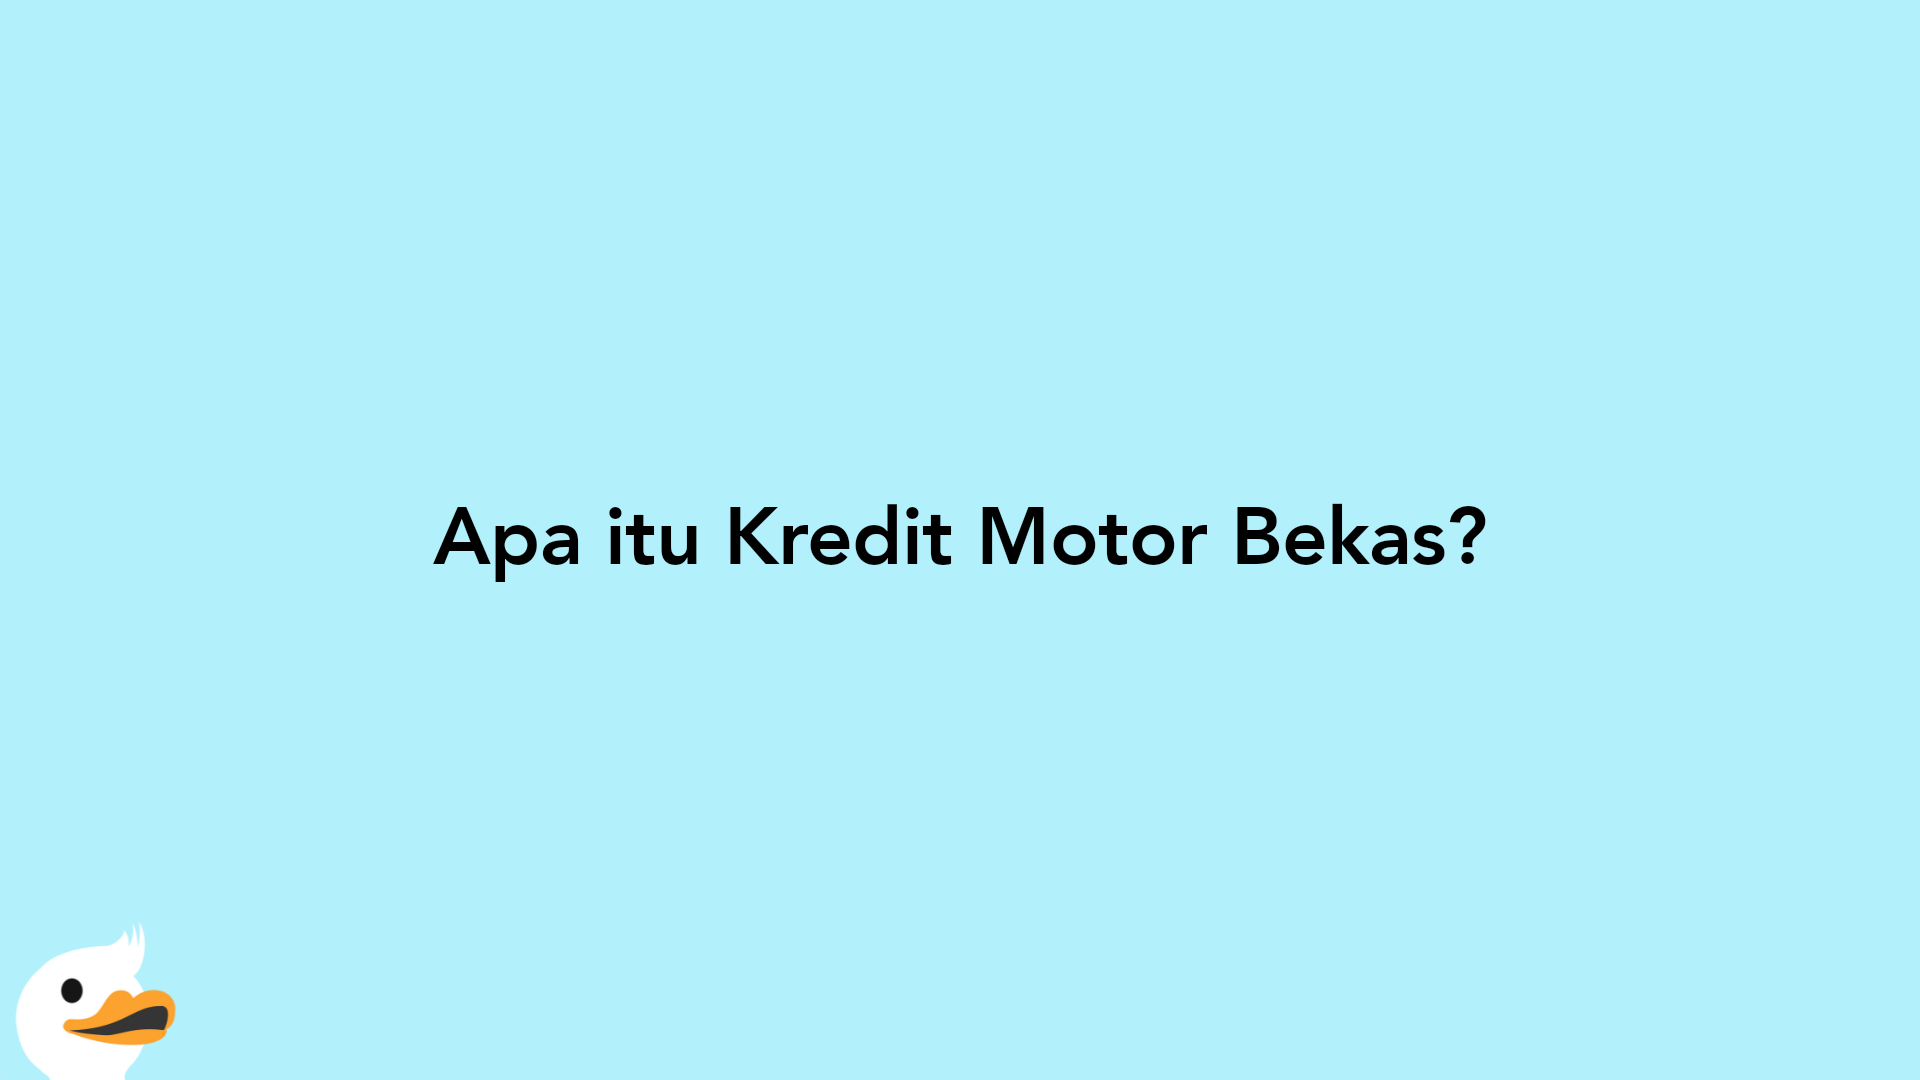 Apa itu Kredit Motor Bekas?